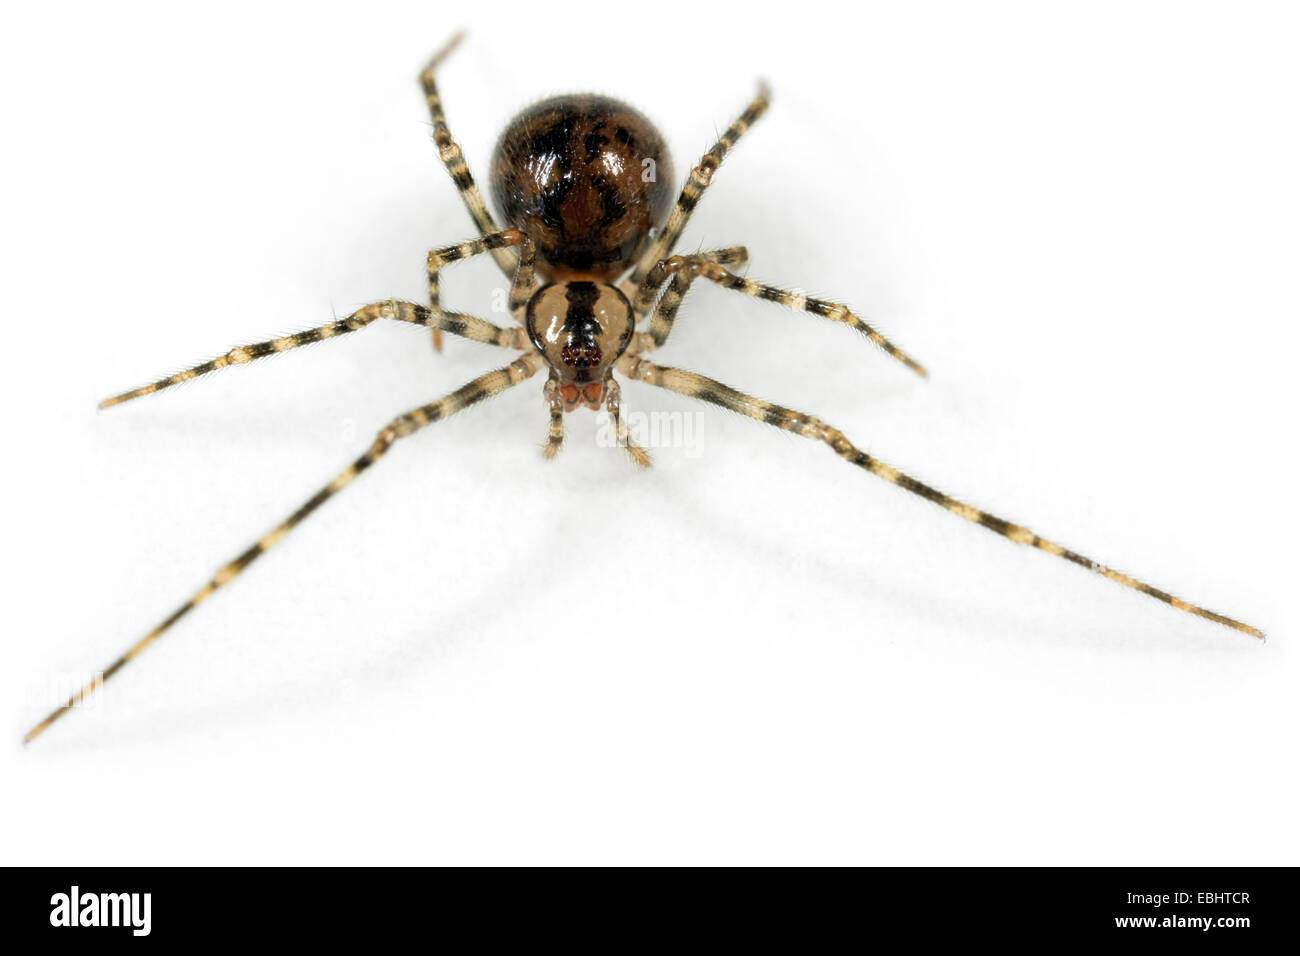 Eine weibliche Höhle Cobweb spider (Nesticus cellulanus) auf weißem Hintergrund. Familie Nesticidae, Höhle Spinnennetz spinnen. Stockfoto